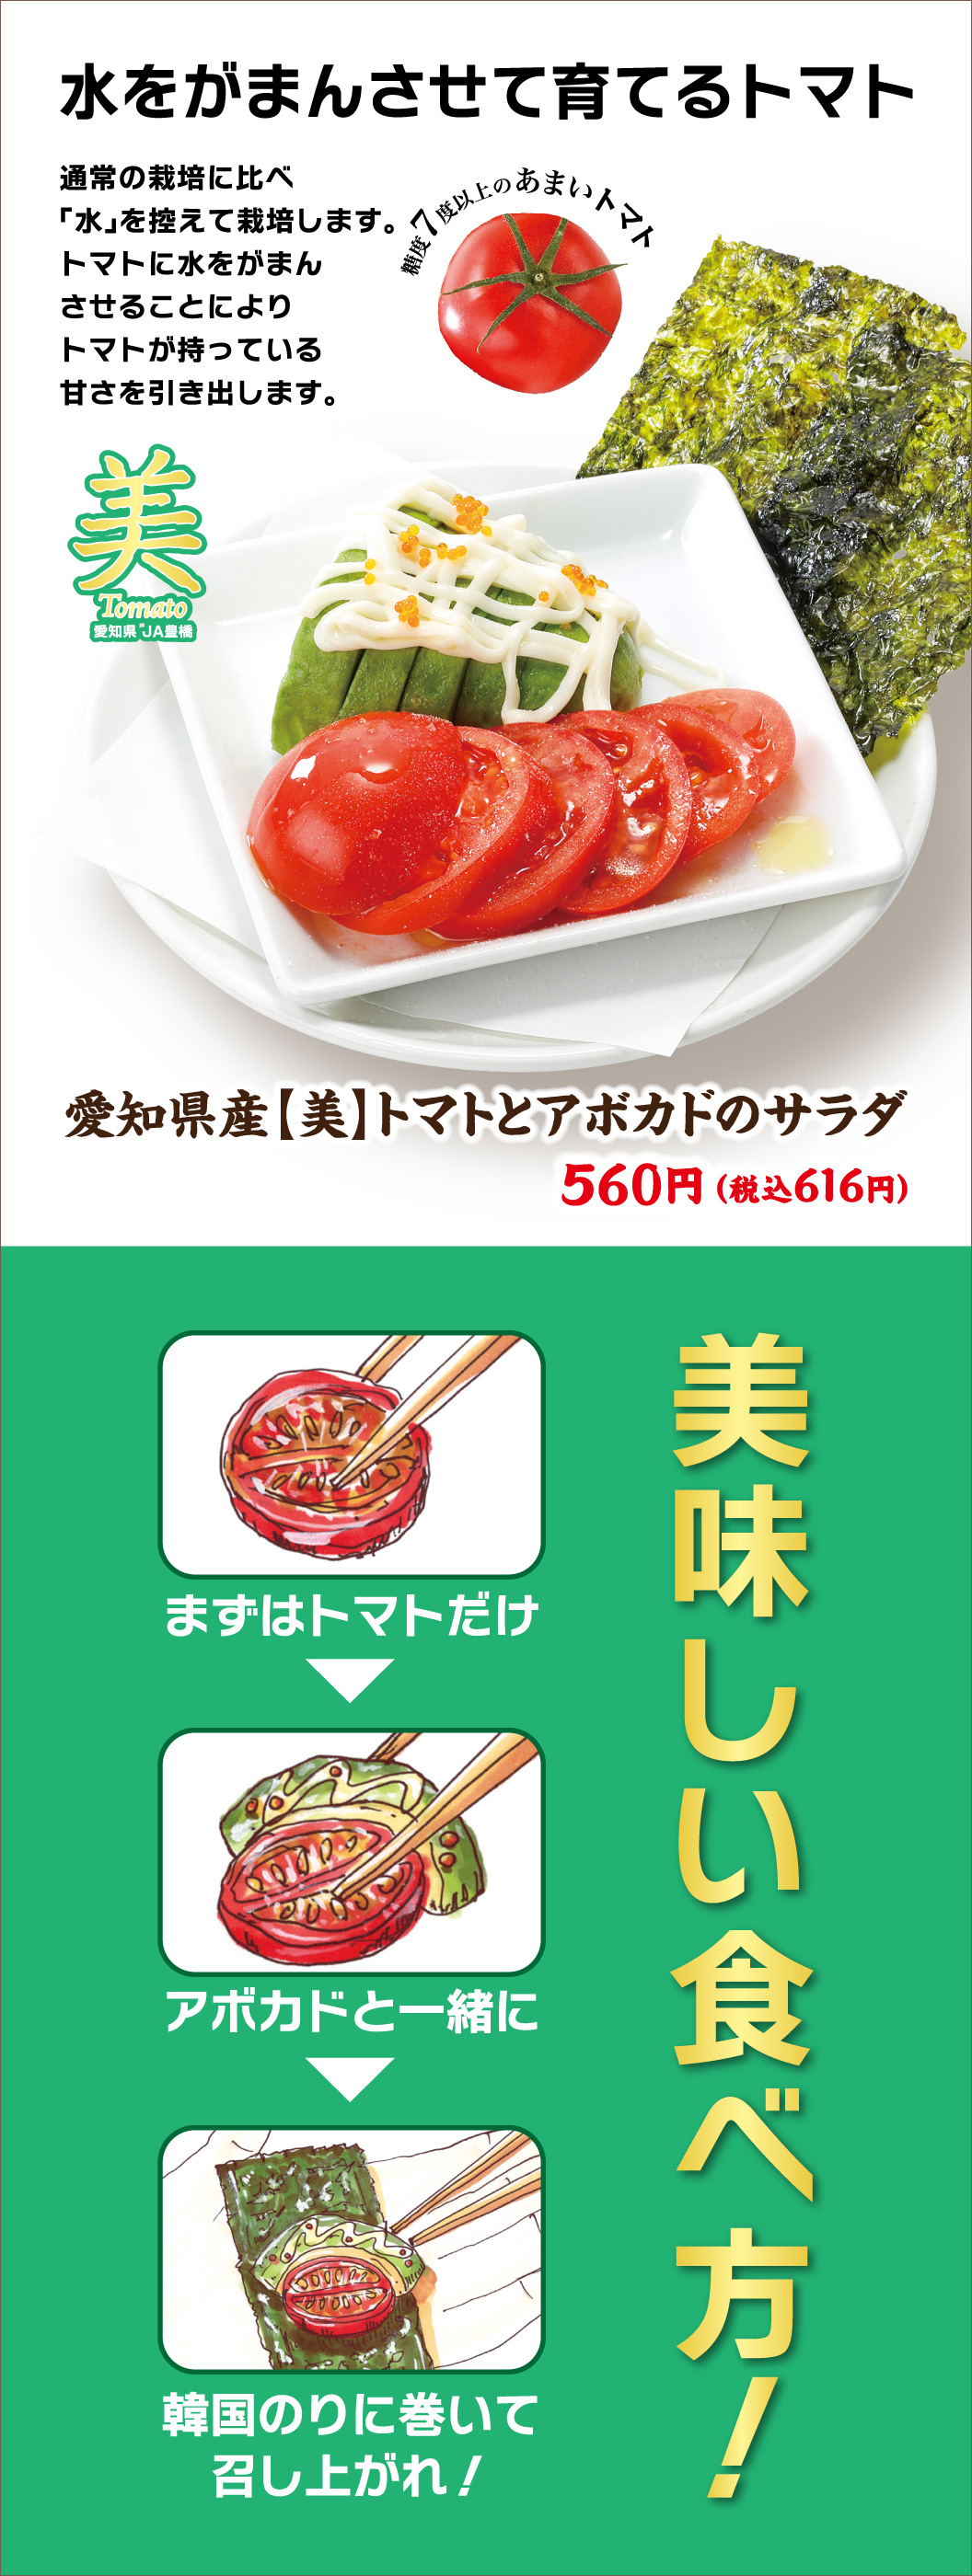 爱知县产 【美】 番茄和鳄梨沙拉